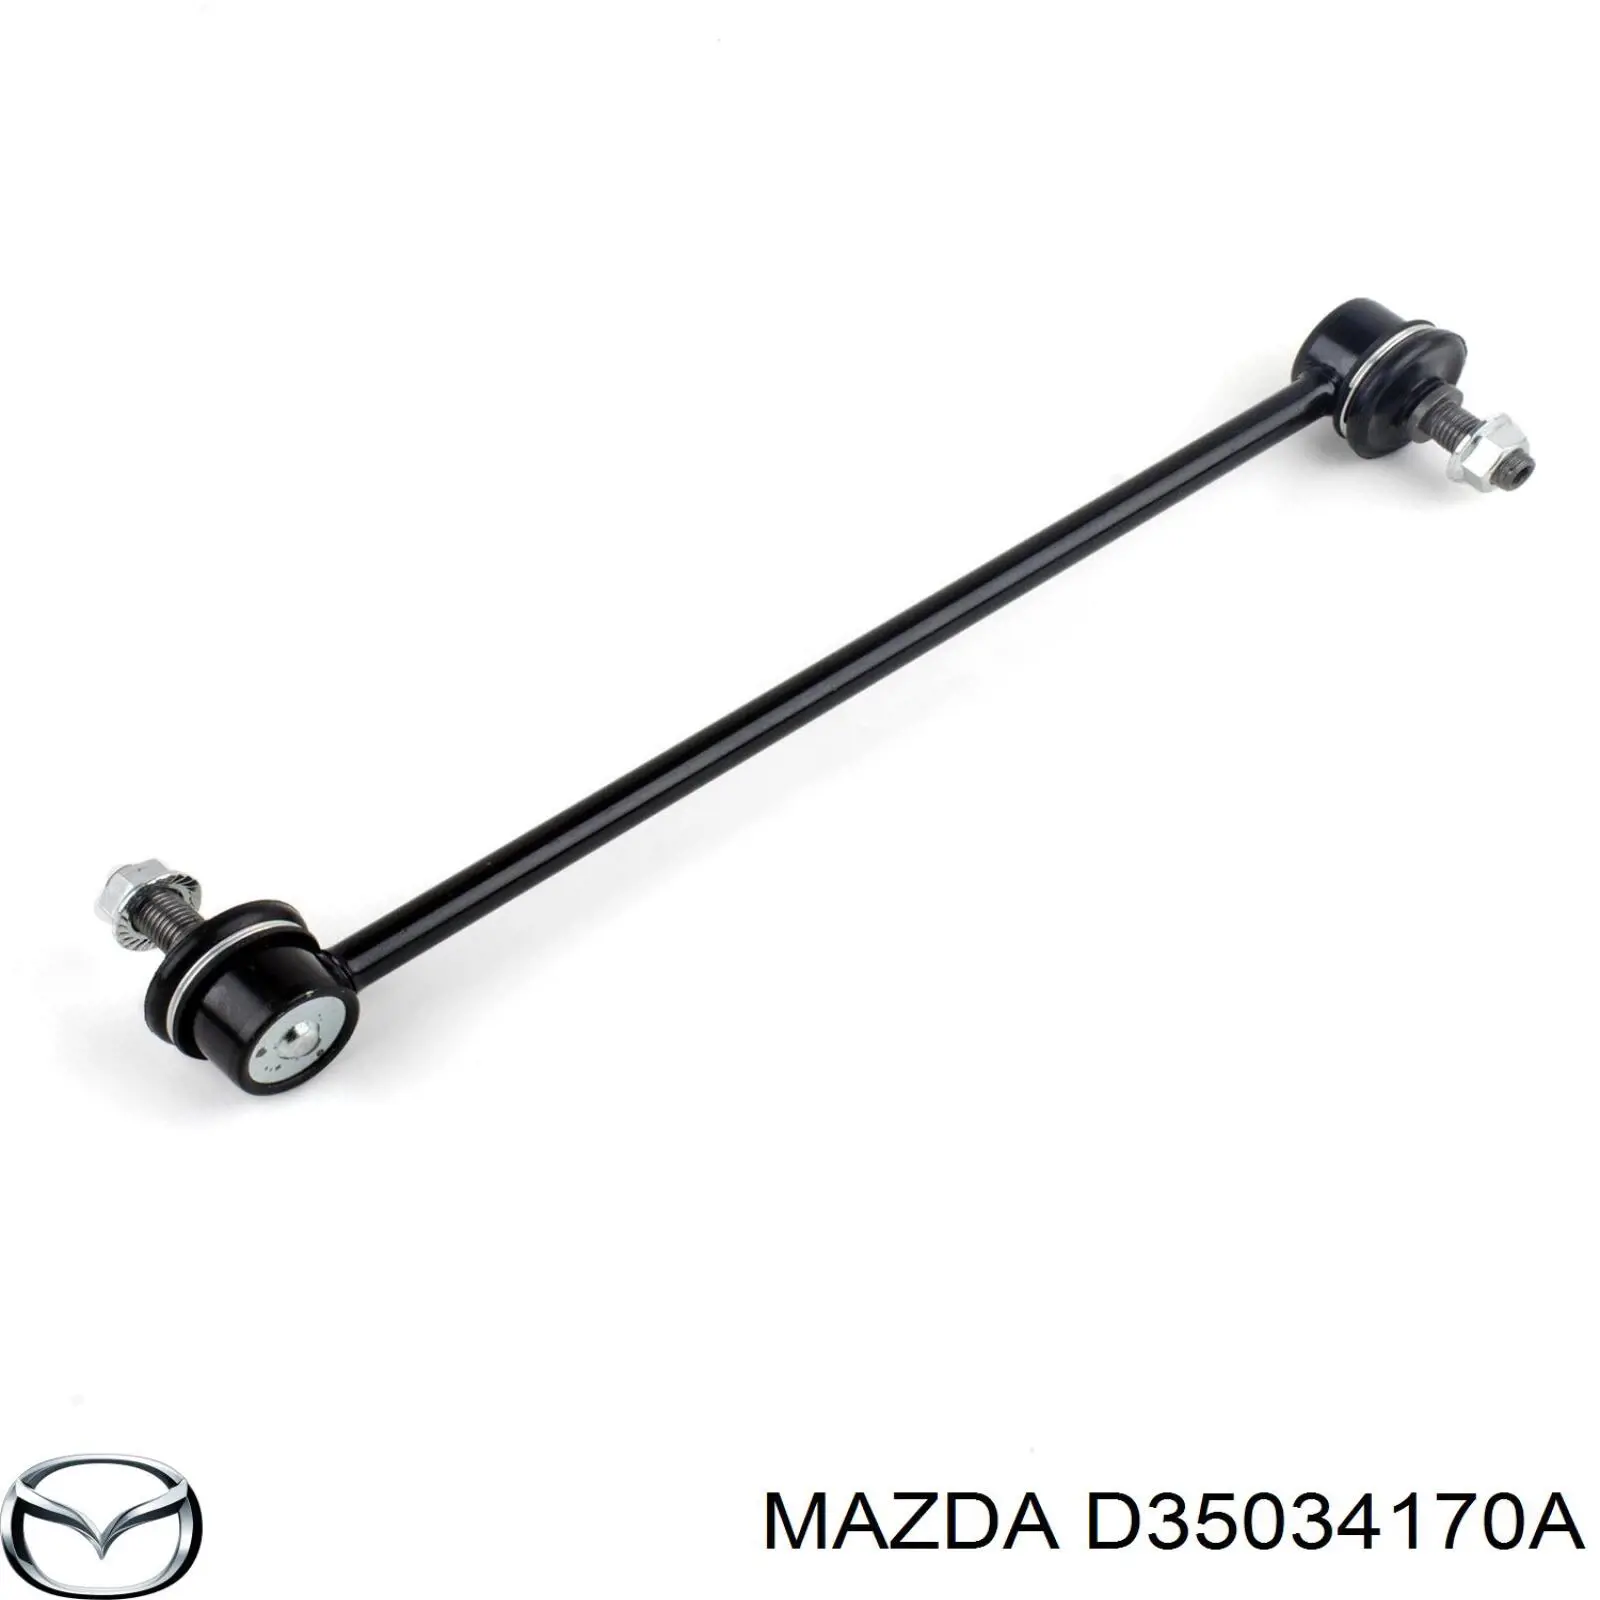 D35034170A Mazda soporte de barra estabilizadora delantera